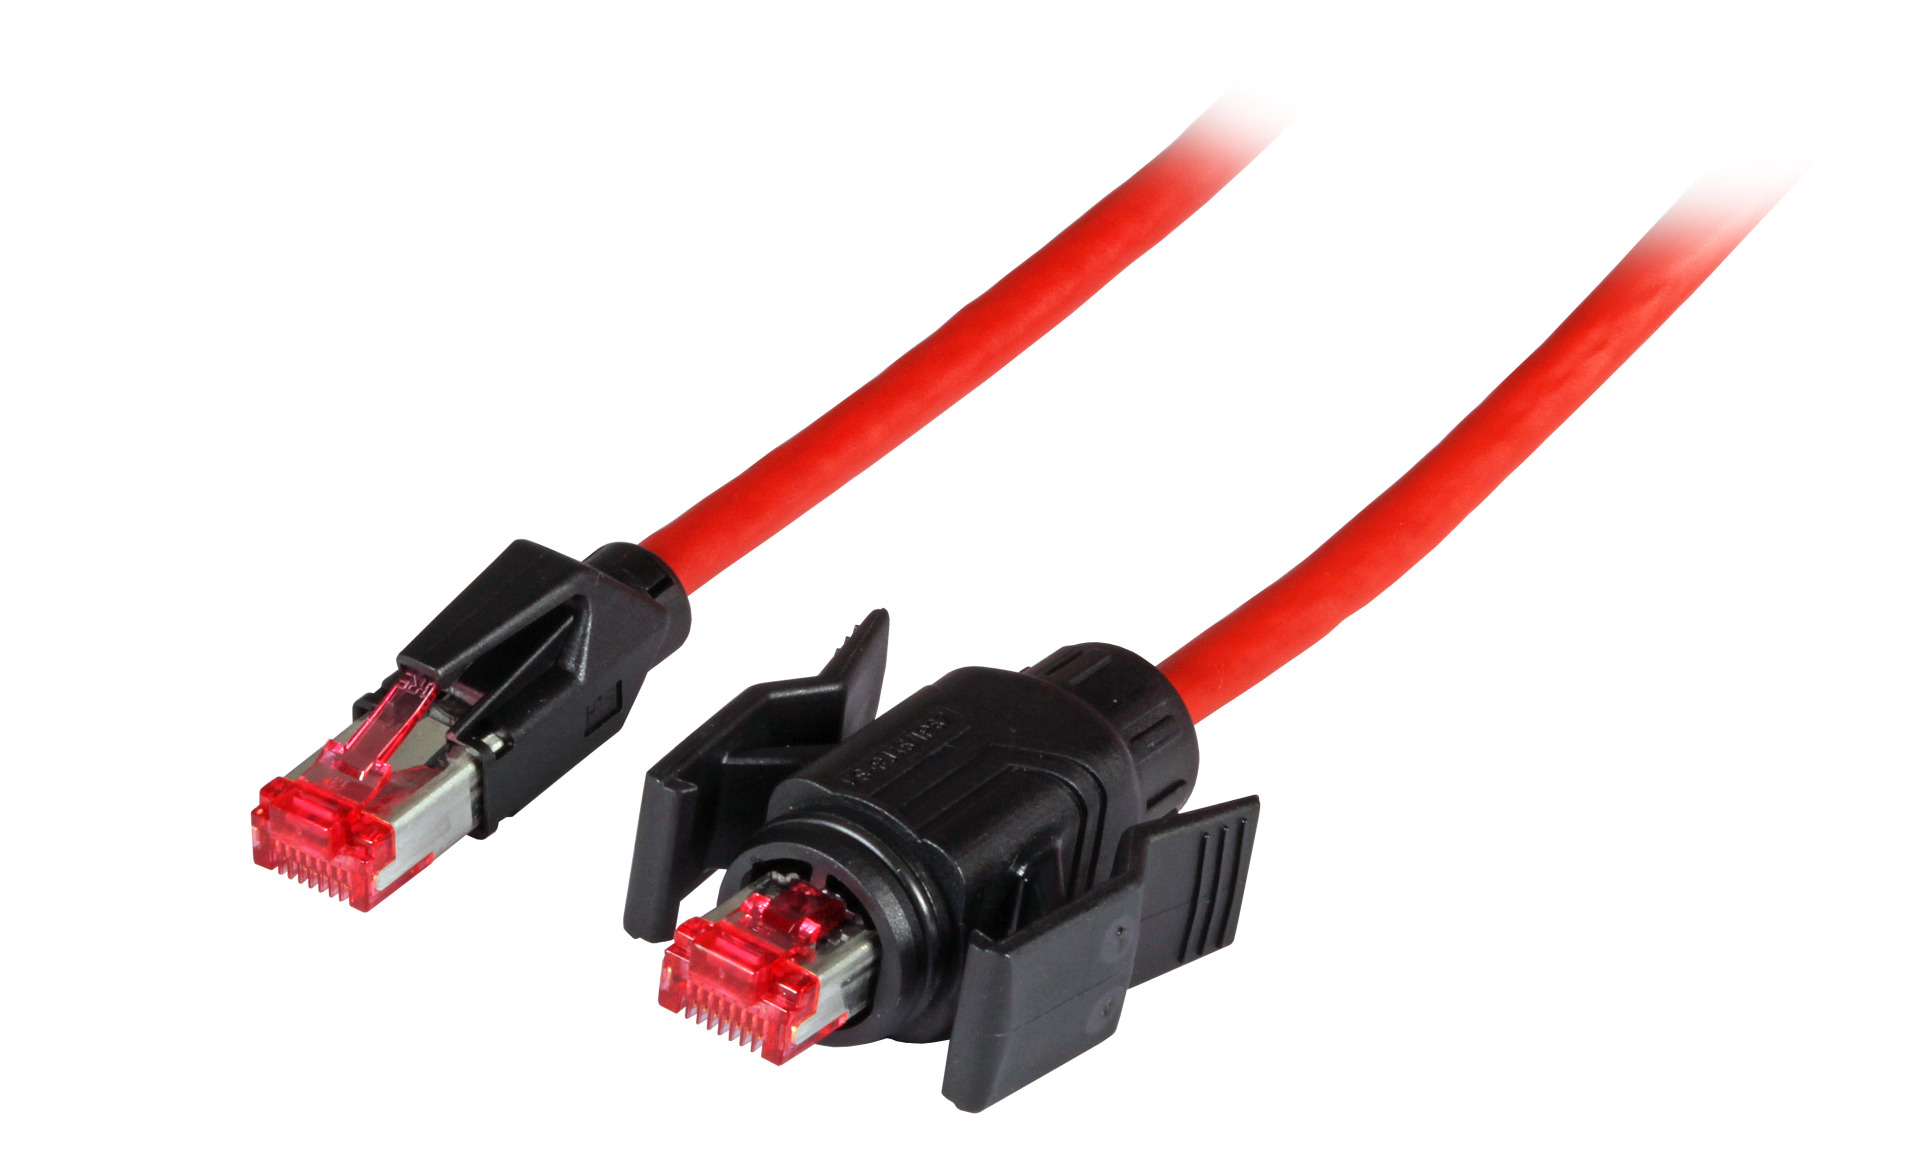 RJ45 Patch cable S/FTP, Cat.6A, IP67/TM21 / TM21, PUR, for 53730.1V2, 10m